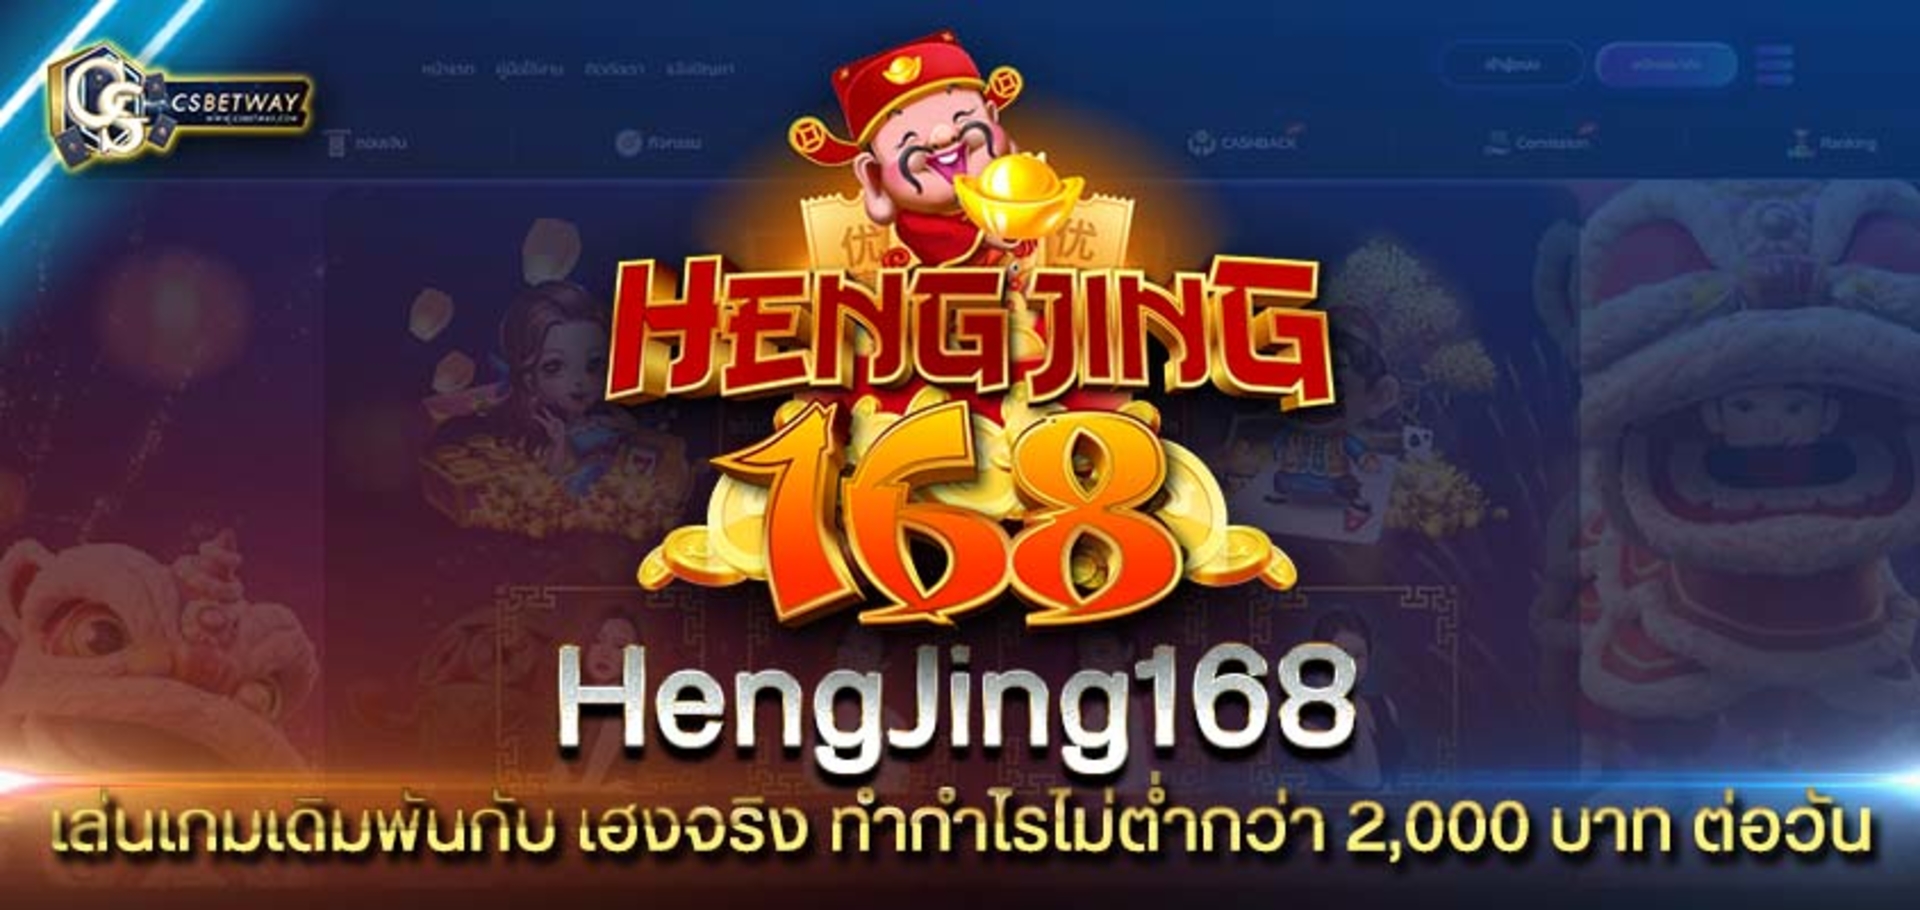 เล่นเกมเดิมพันกับ hengjing168 เฮงจริง ทำกำไรไม่ต่ำกว่า 2,000 บาท ต่อวัน